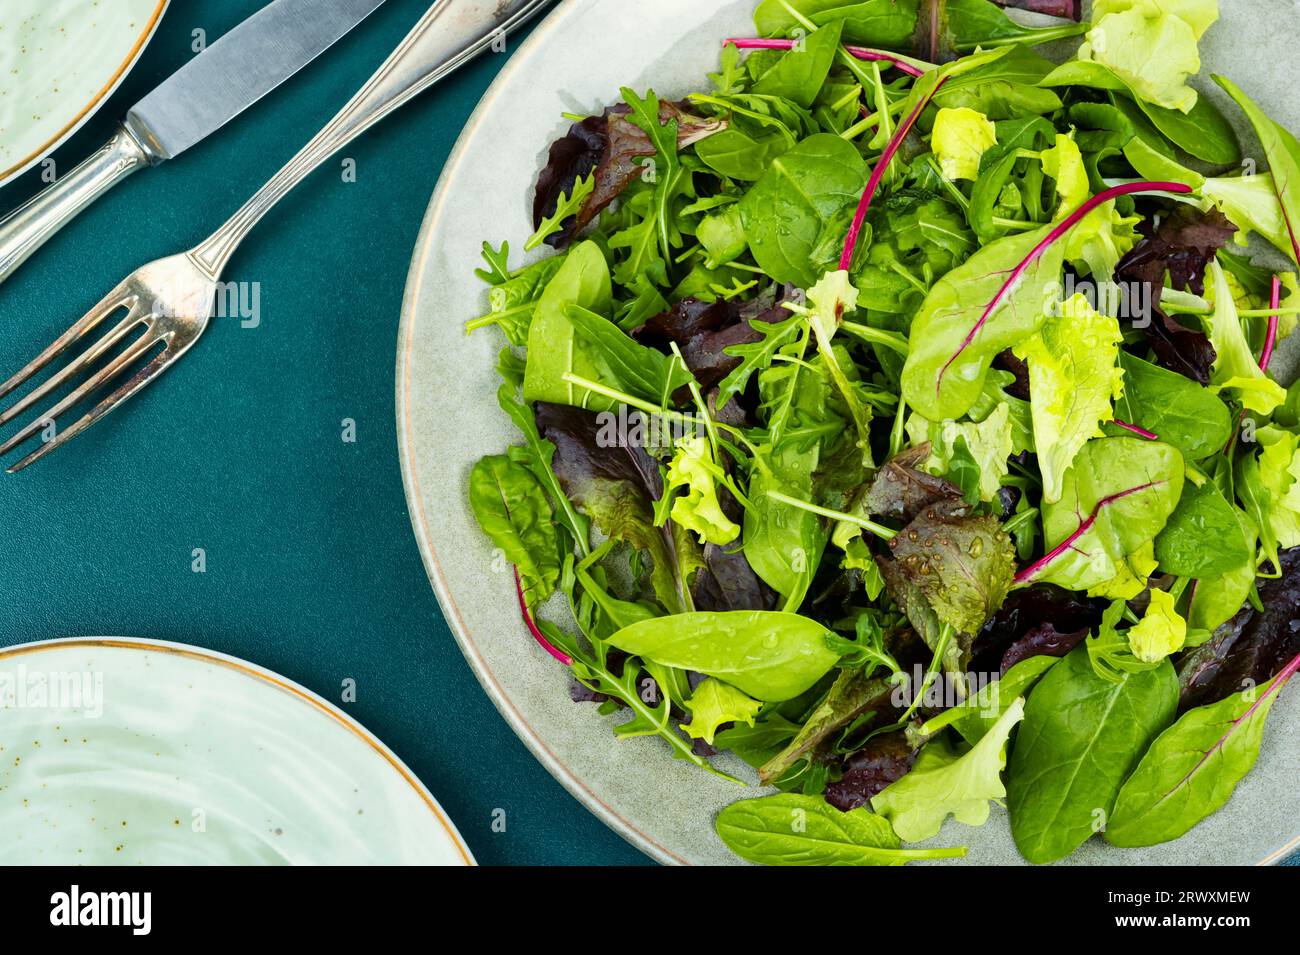 Salade verte fraîche et saine avec salade de laitue, chicorée, arugula. Aliments verts. Banque D'Images